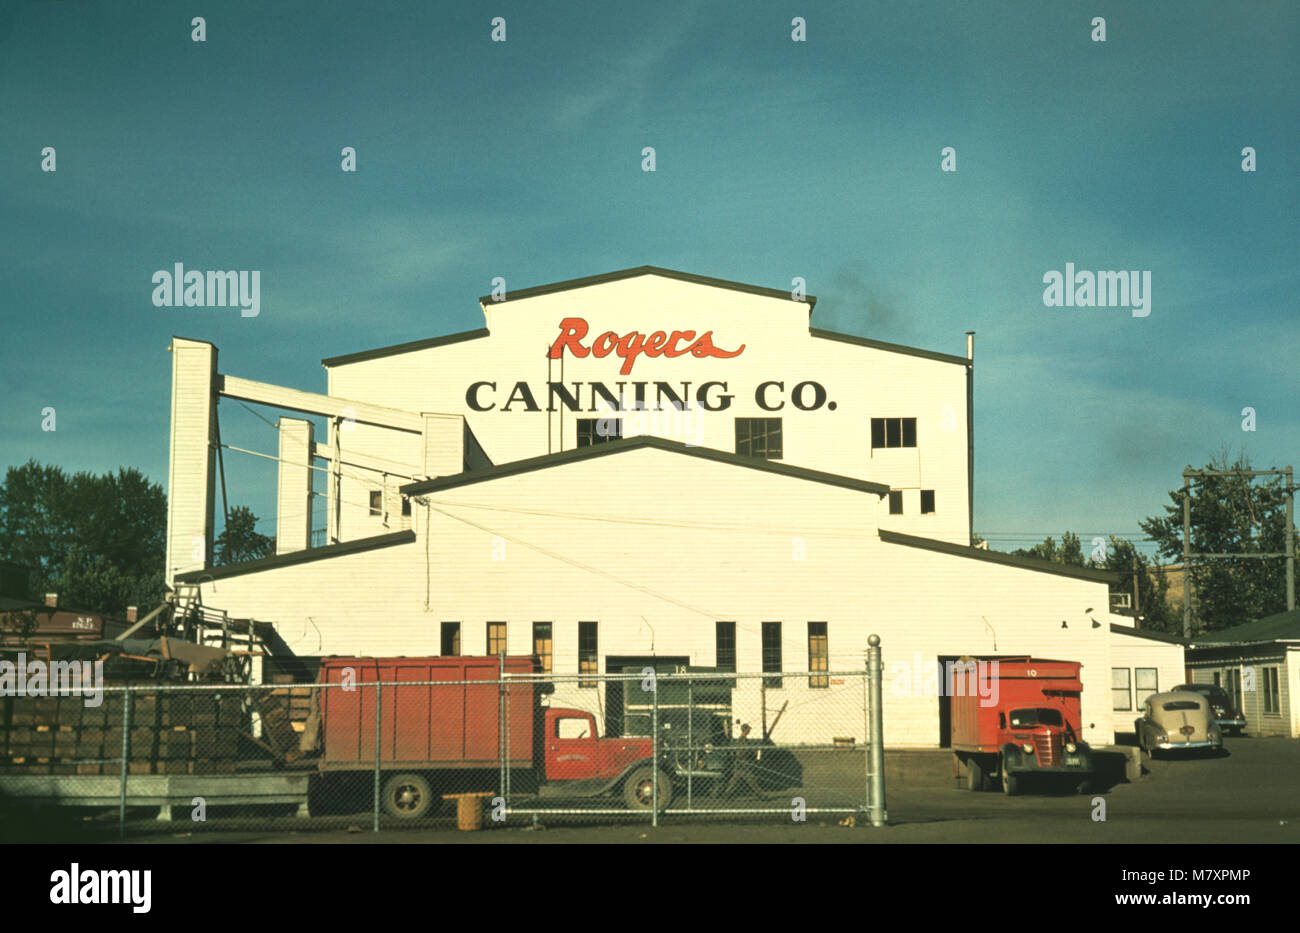 Rogers Canning Co., impianto di inscatolamento Milton-Freewater, Oregon, Stati Uniti d'America, Russell Lee per la Farm Security Administration - Ufficio di informazione di guerra, Luglio 1941 Foto Stock